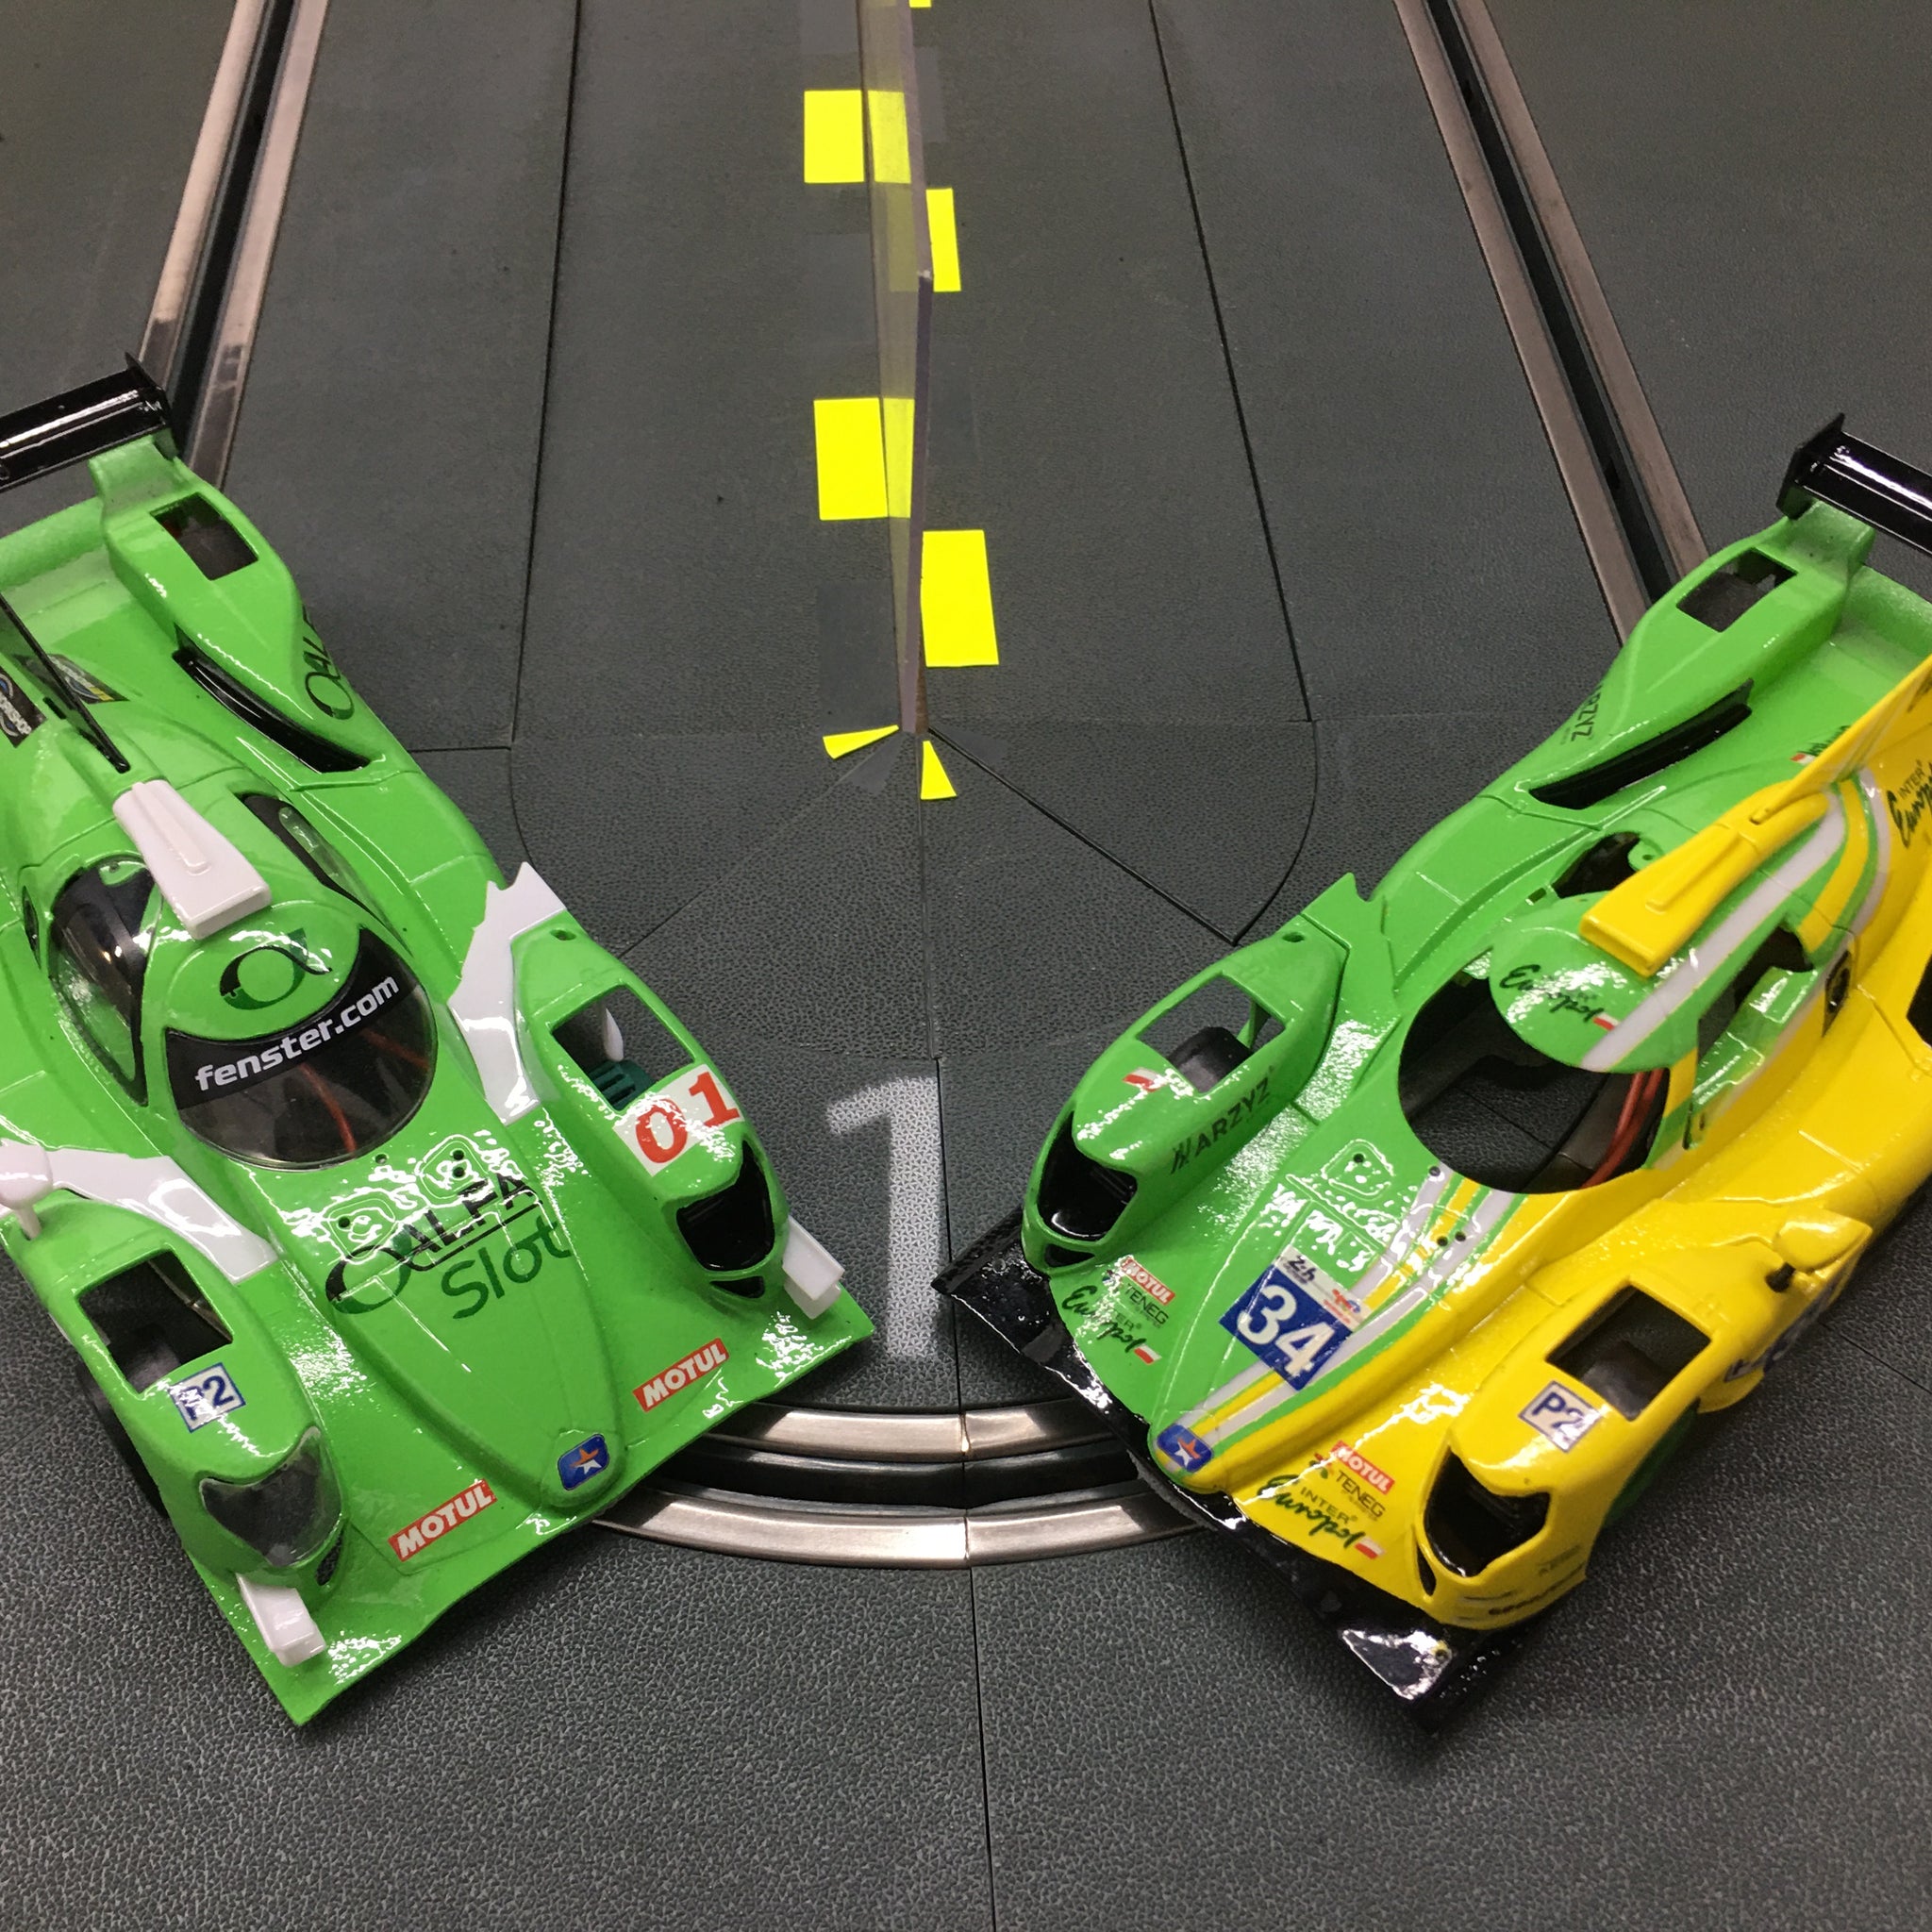 ¡Próximos lanzamientos!, Chasis Oro Oreca, Aston Martin GTE y Lola Aston Martin